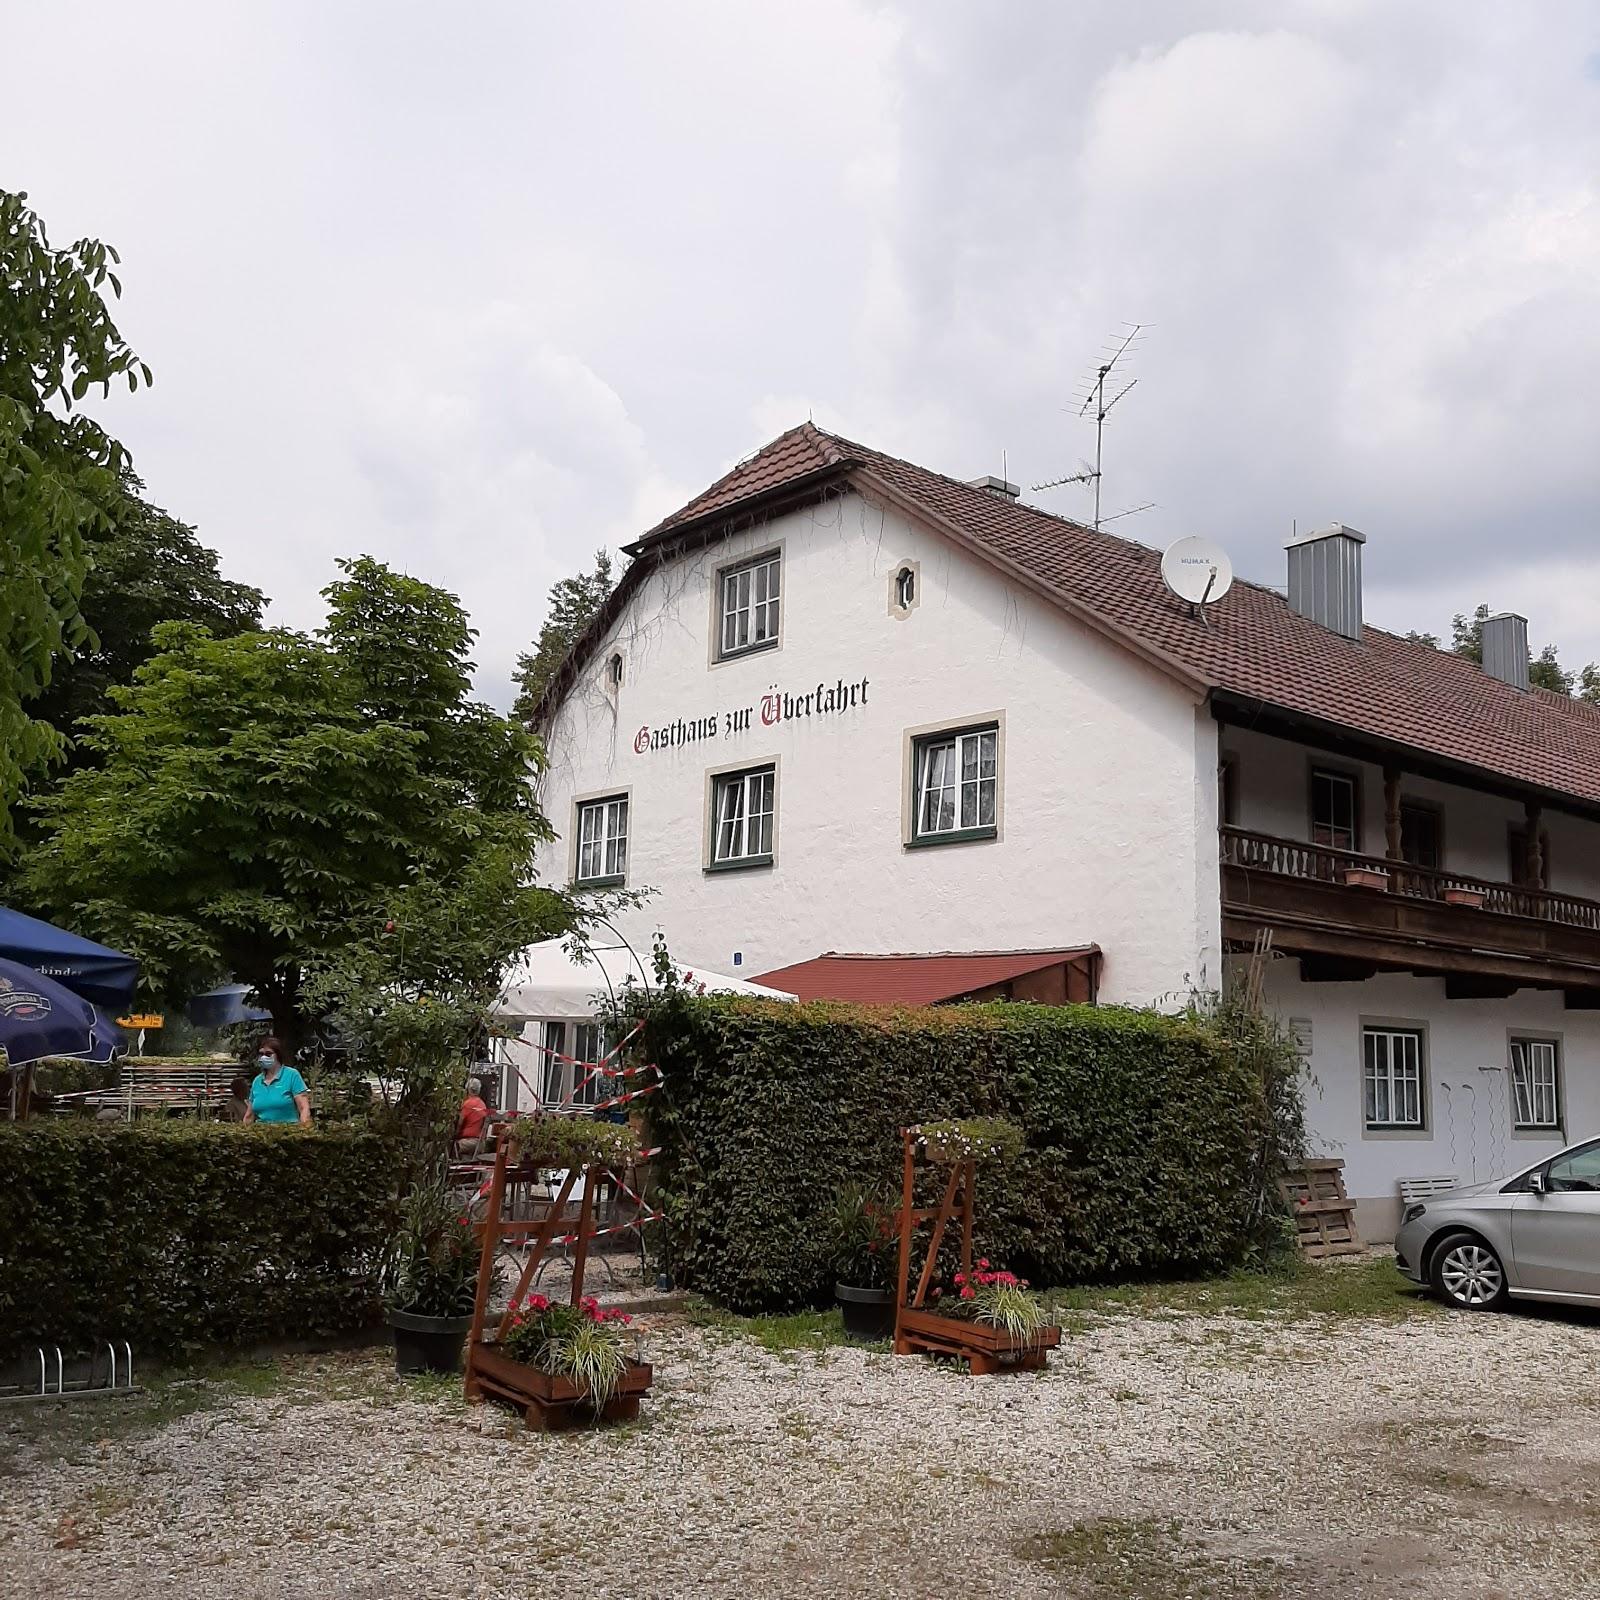 Restaurant "Gasthaus Zur Überfahrt" in Osterhofen